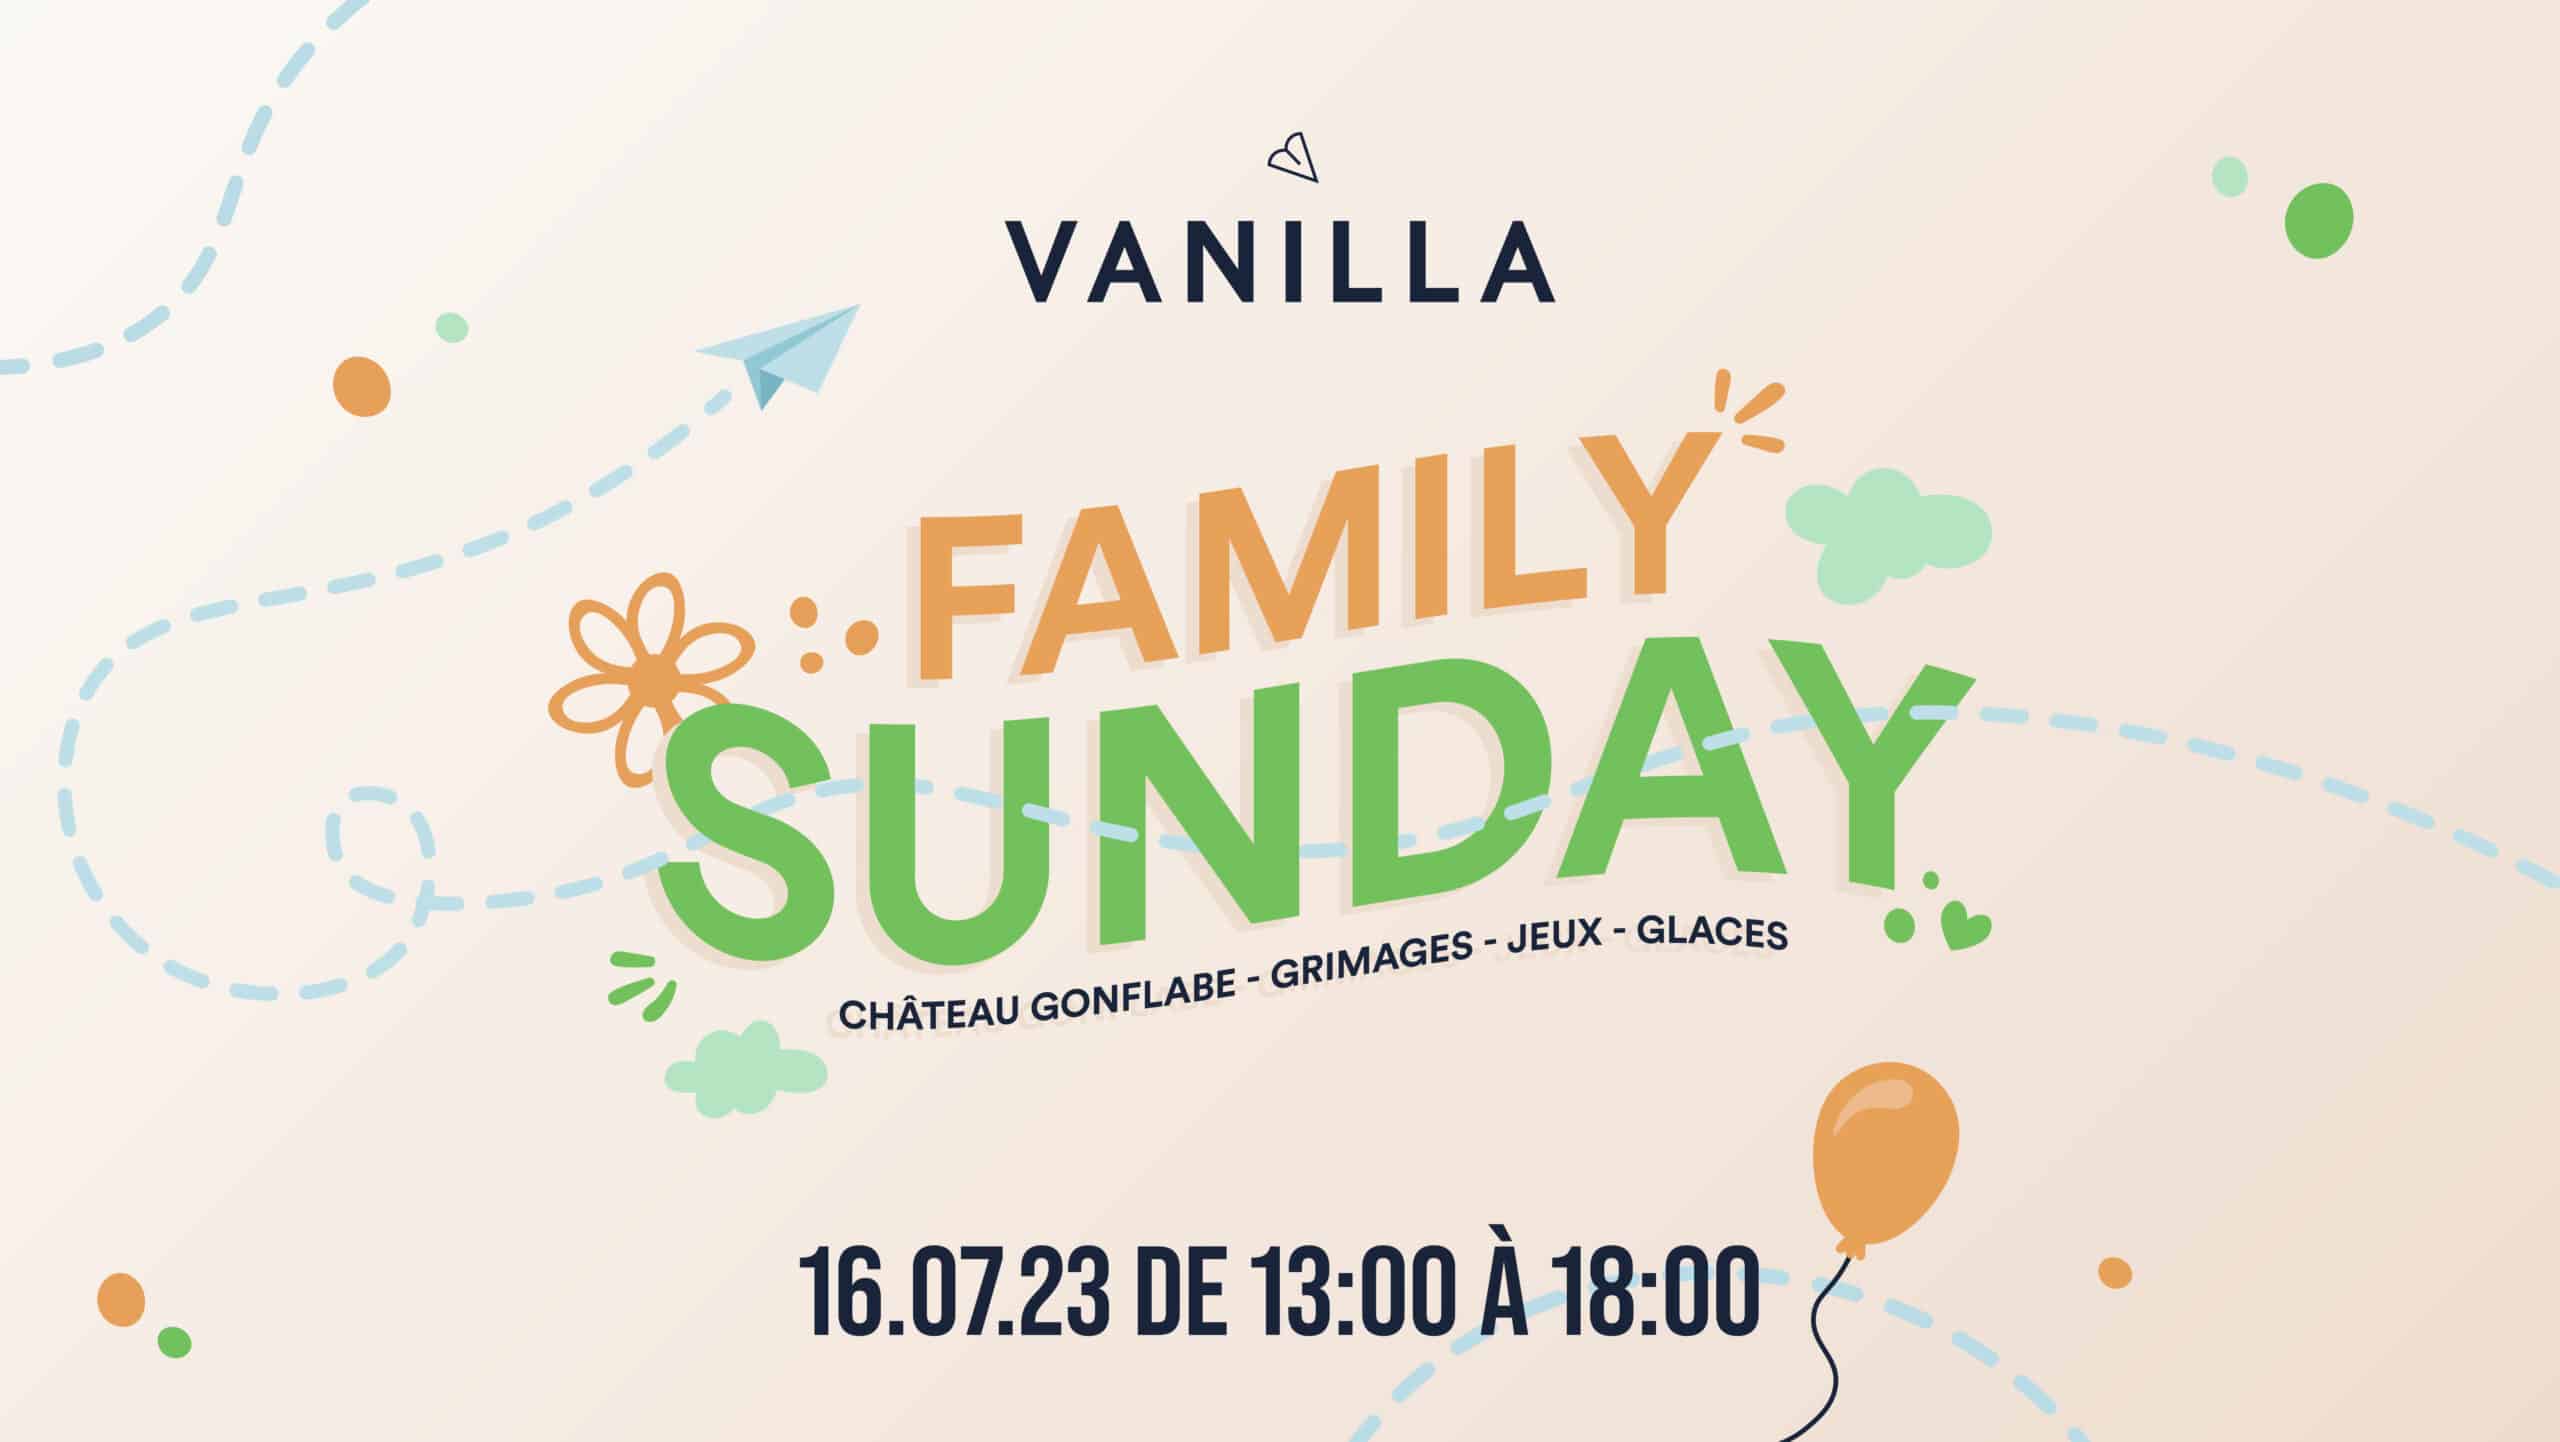 vanilla-events-sunday-ML_Vanilla-event-sunday-07-16